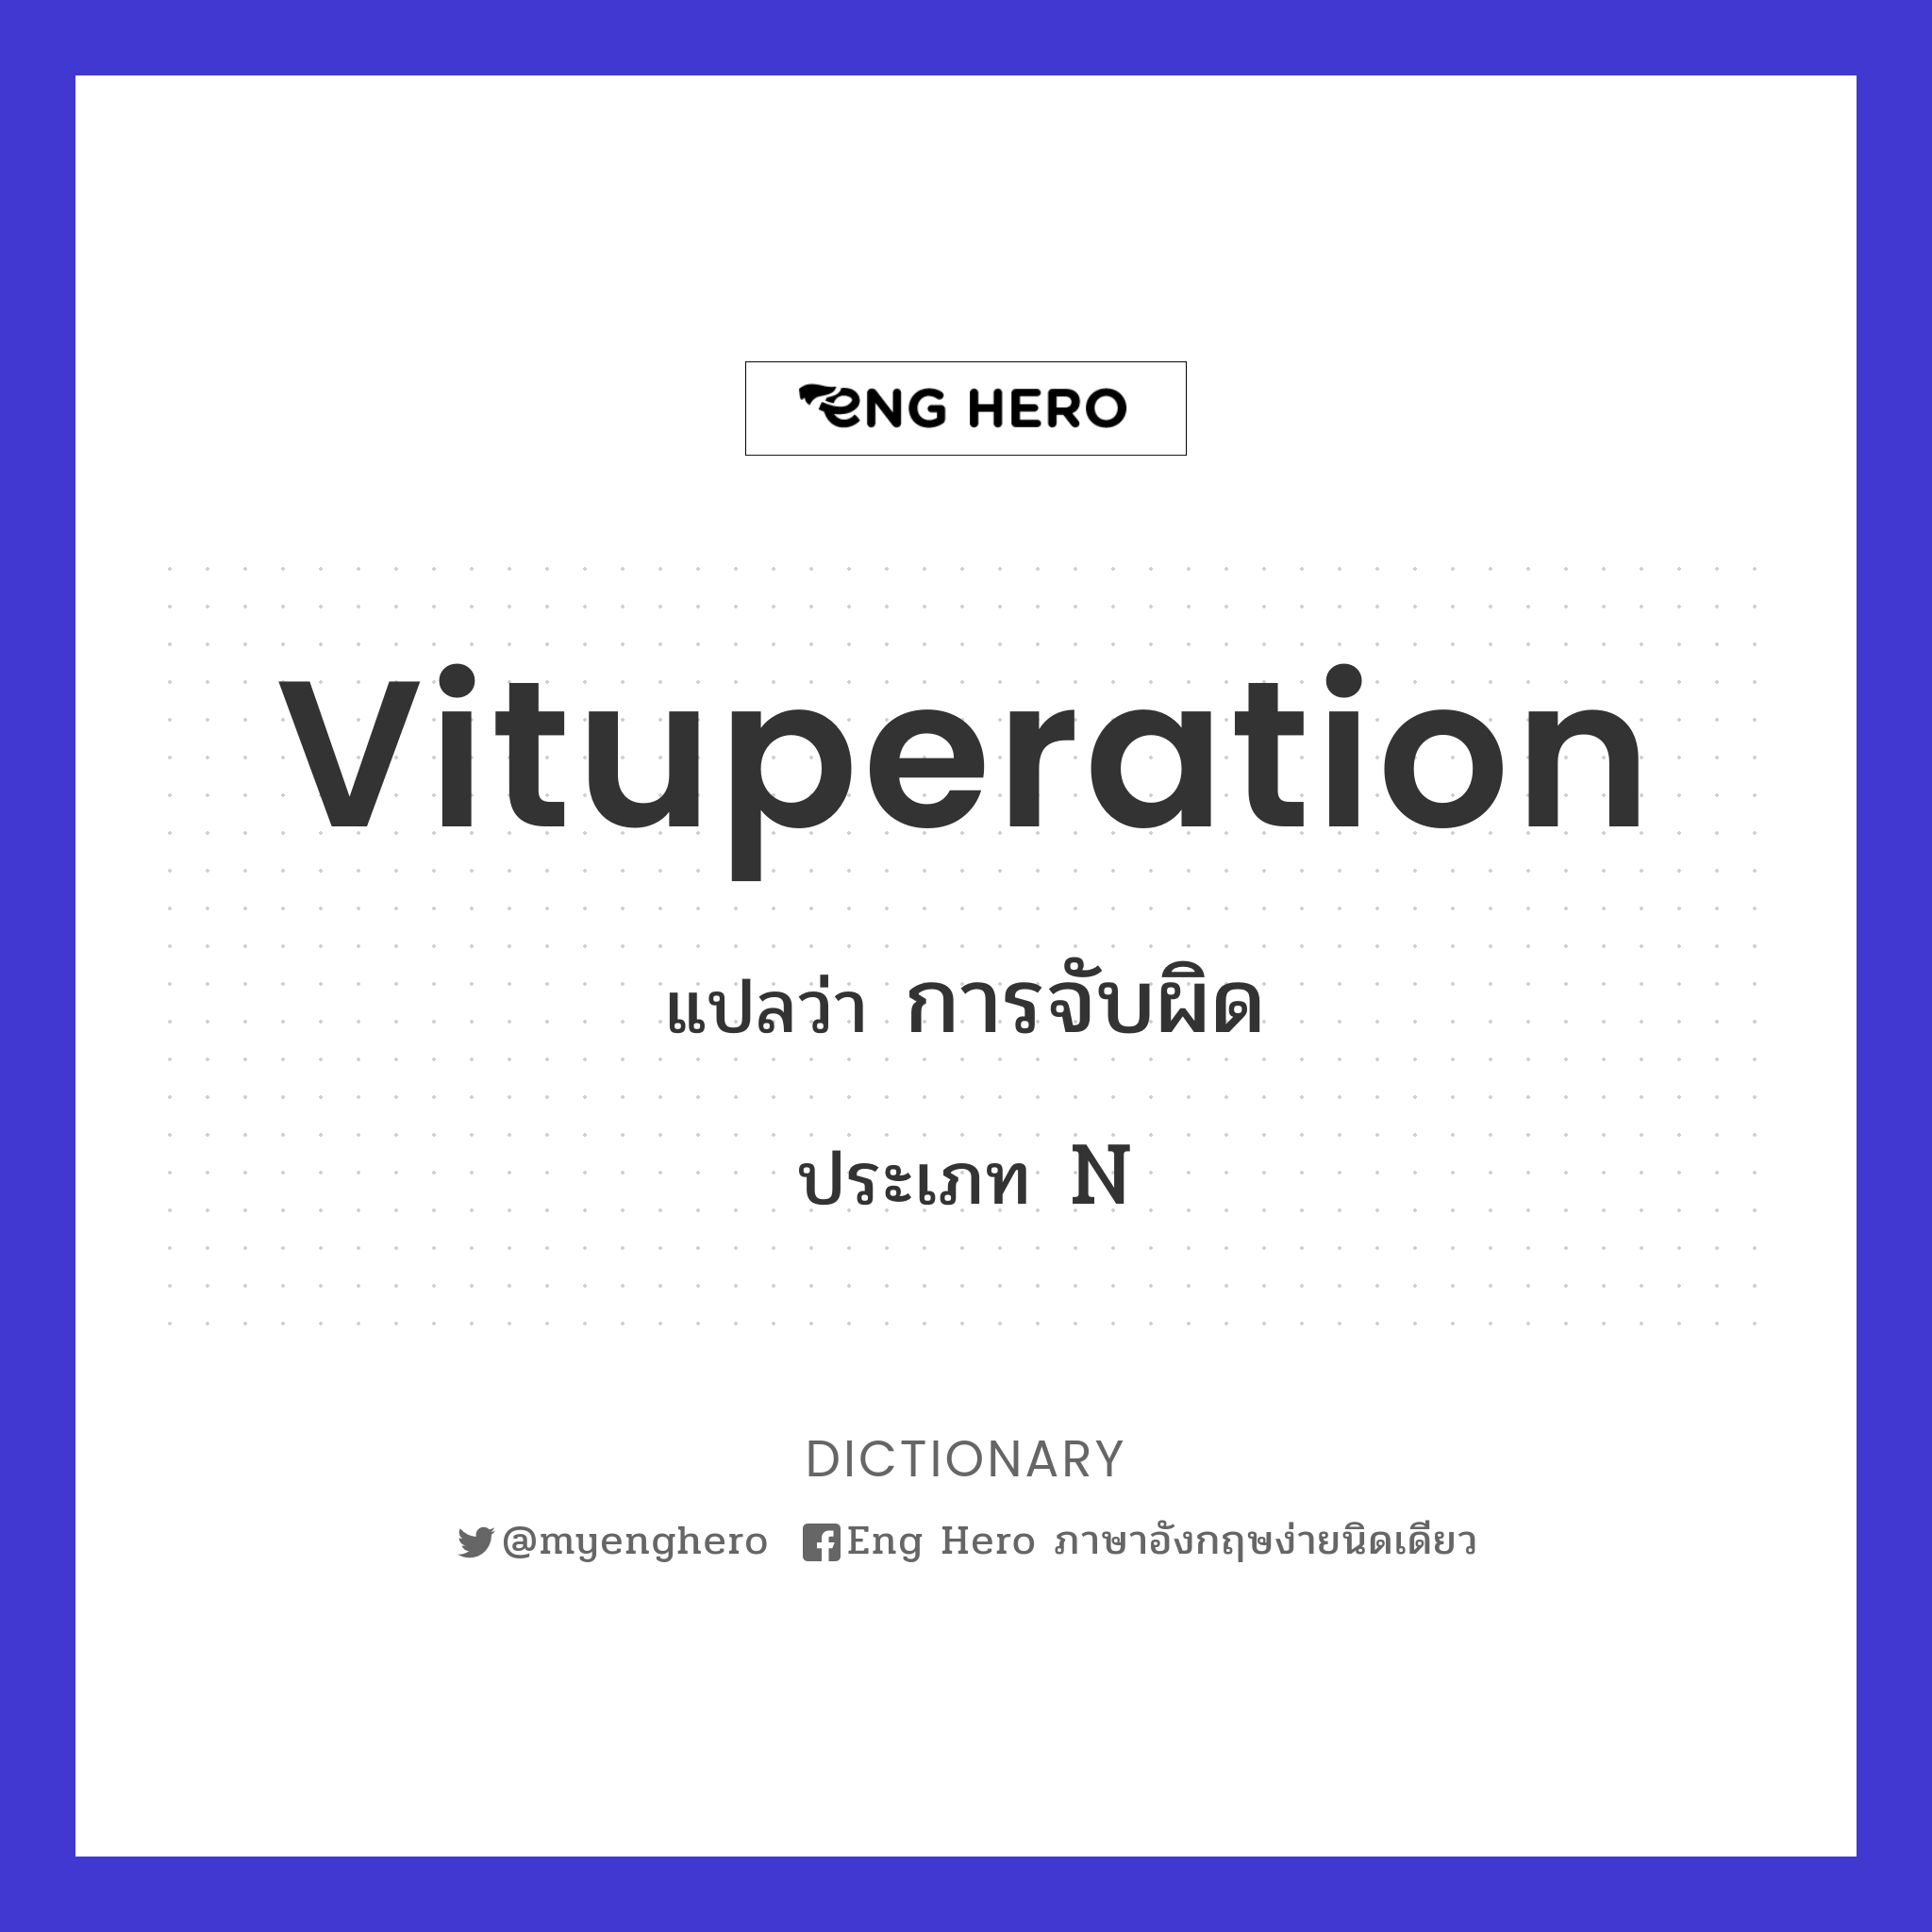 vituperation